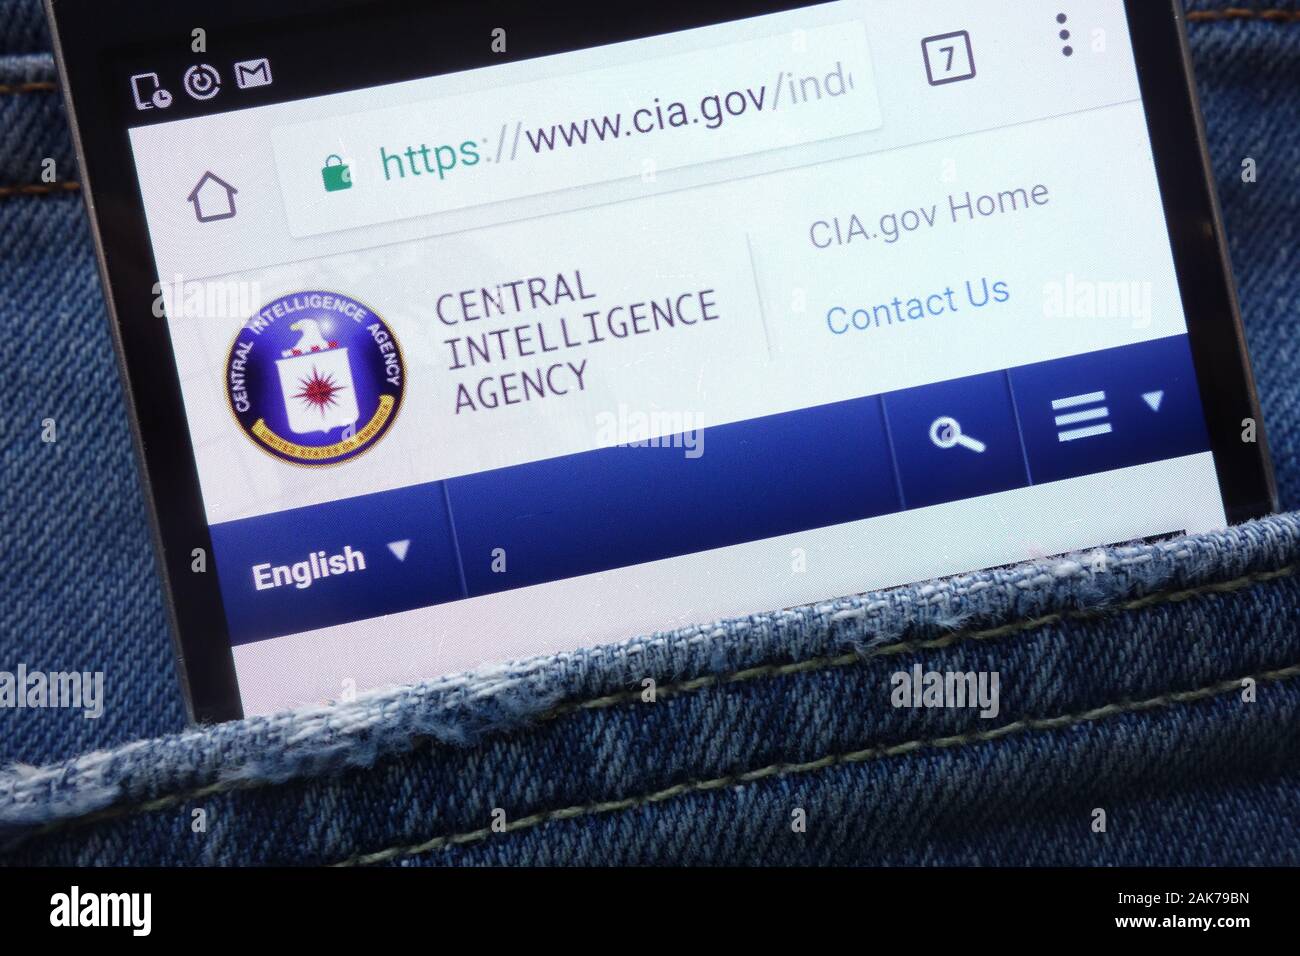 CIA (Central Intelligence Agency) site web affiché sur smartphone caché dans la poche de jeans Banque D'Images